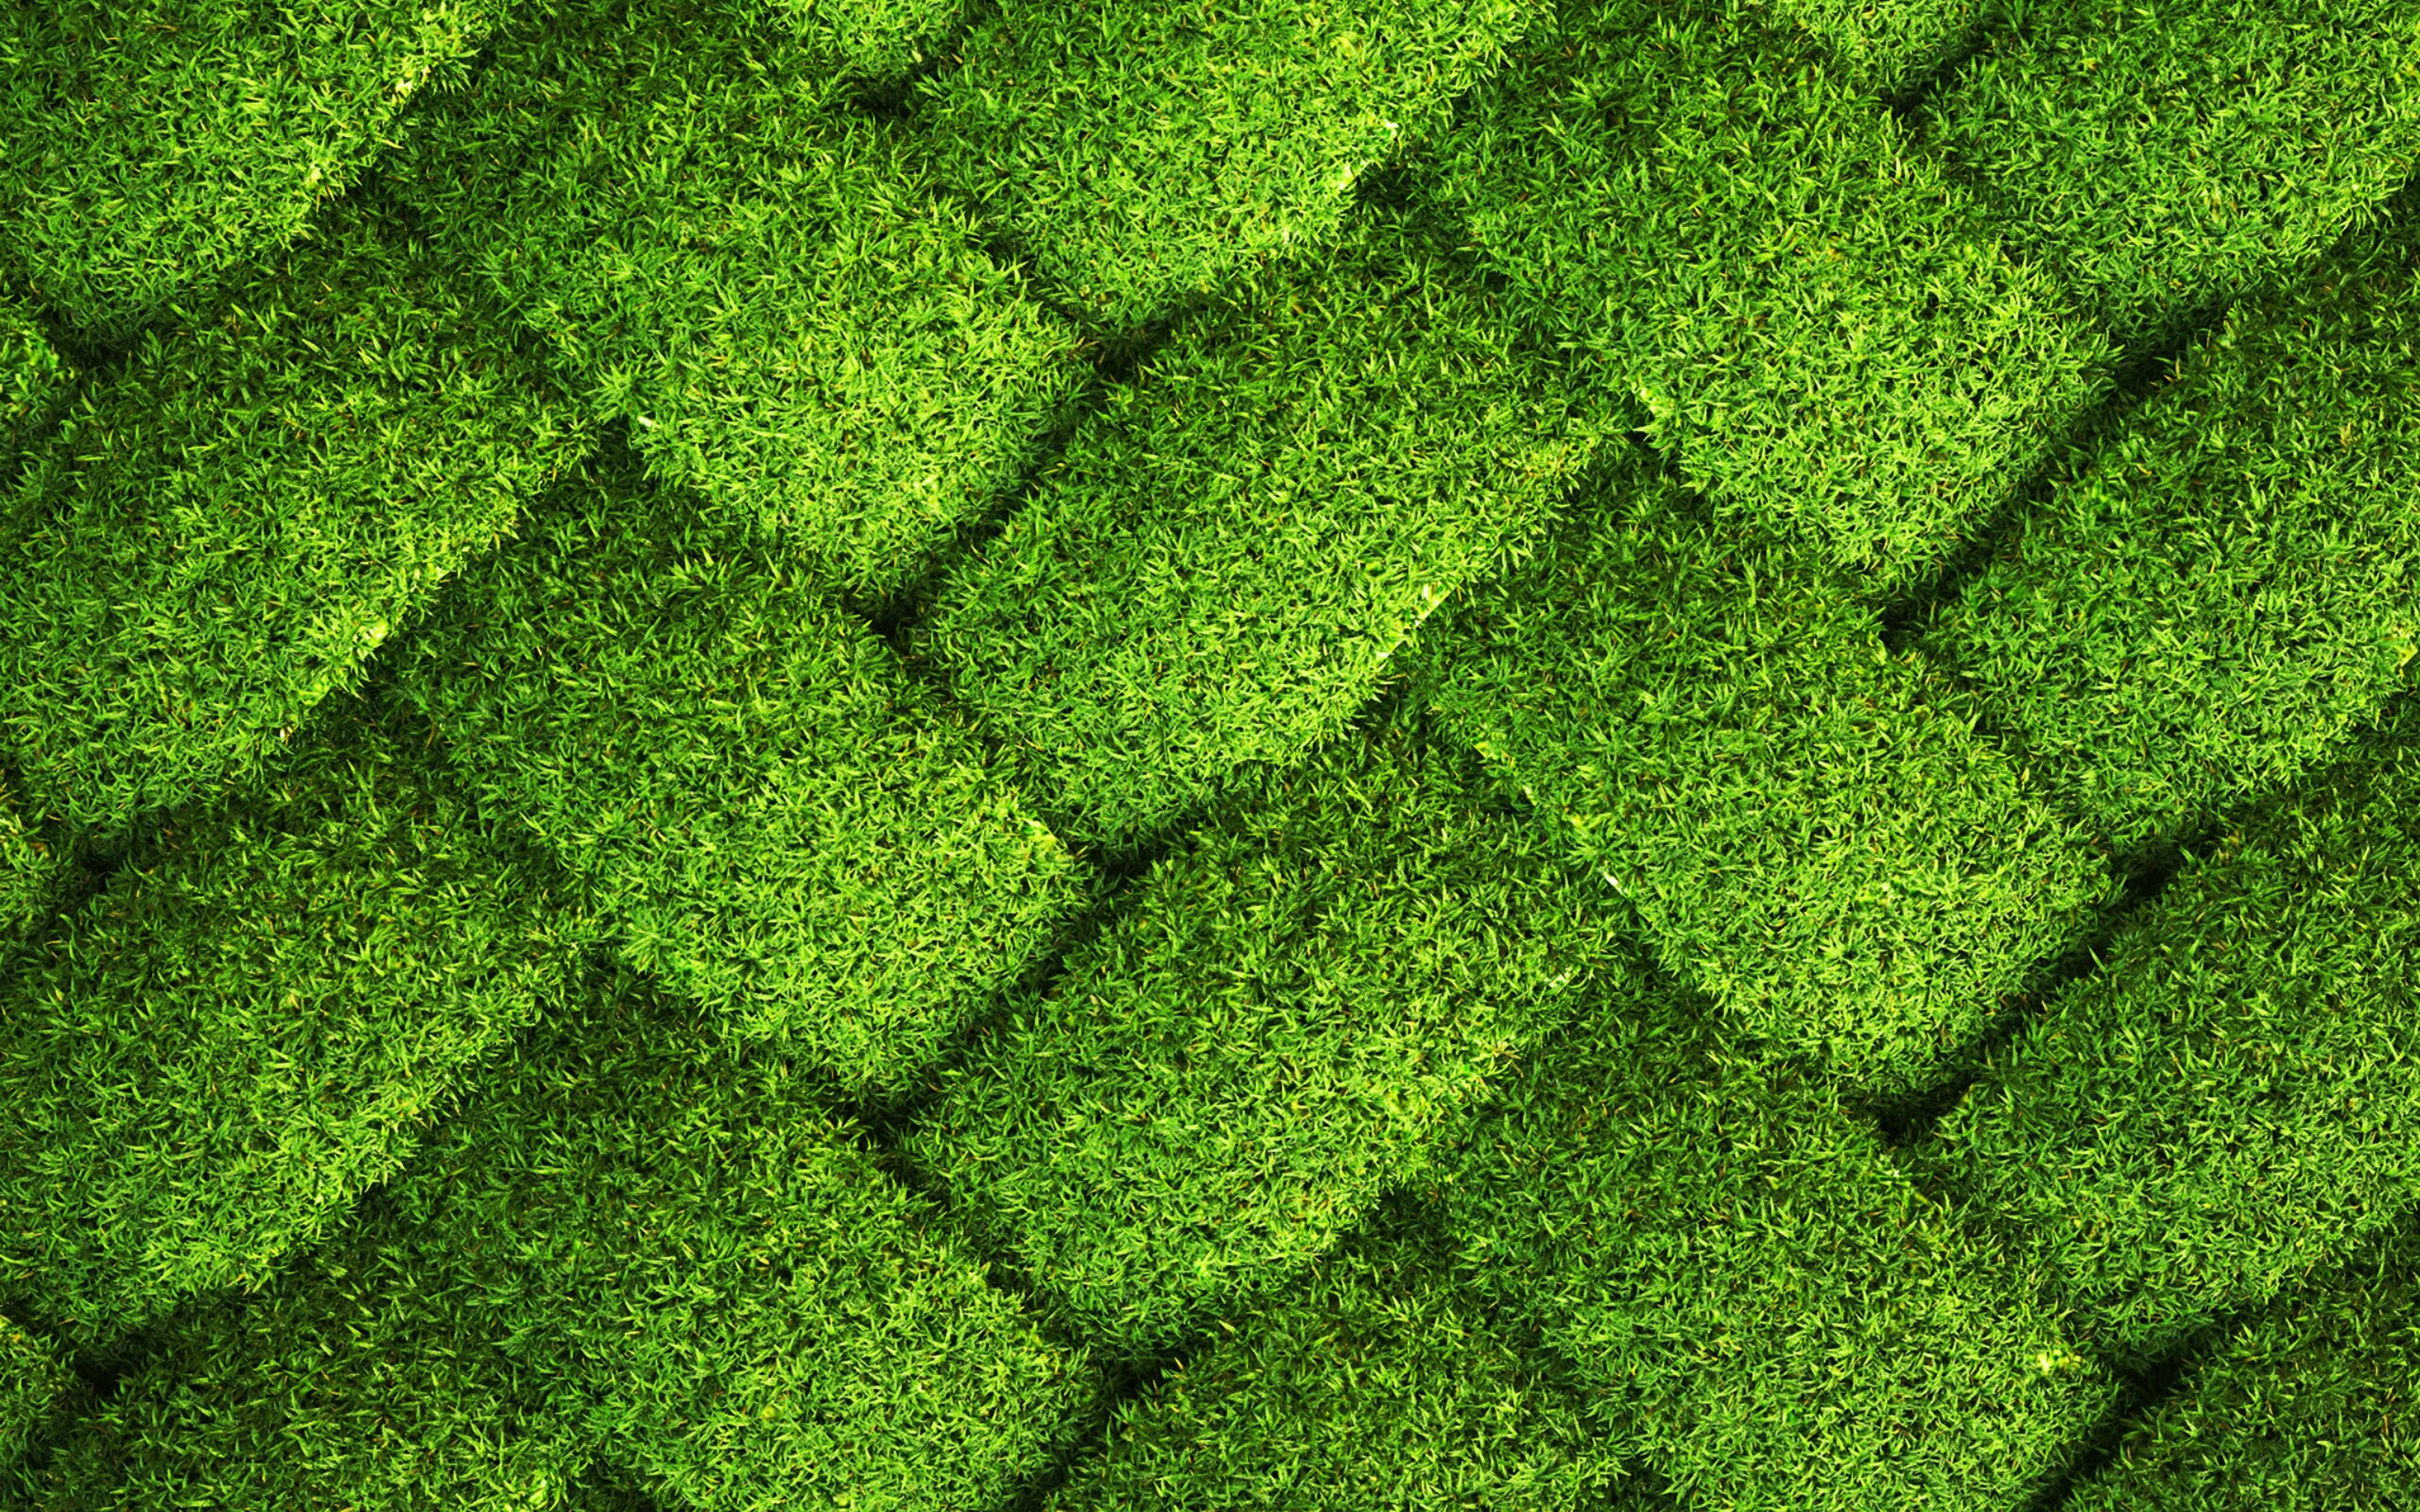 Không chỉ cung cấp những hình nền màu xanh lá cây tuyệt đẹp, chúng tôi còn có sẵn hình nền chất liệu bãi cỏ, kết cấu lưới cỏ mang lại sự trẻ trung và tươi mới cho màn hình của bạn. Chất lượng hình nền HD sẽ giúp bạn có trải nghiệm tuyệt vời nhất.